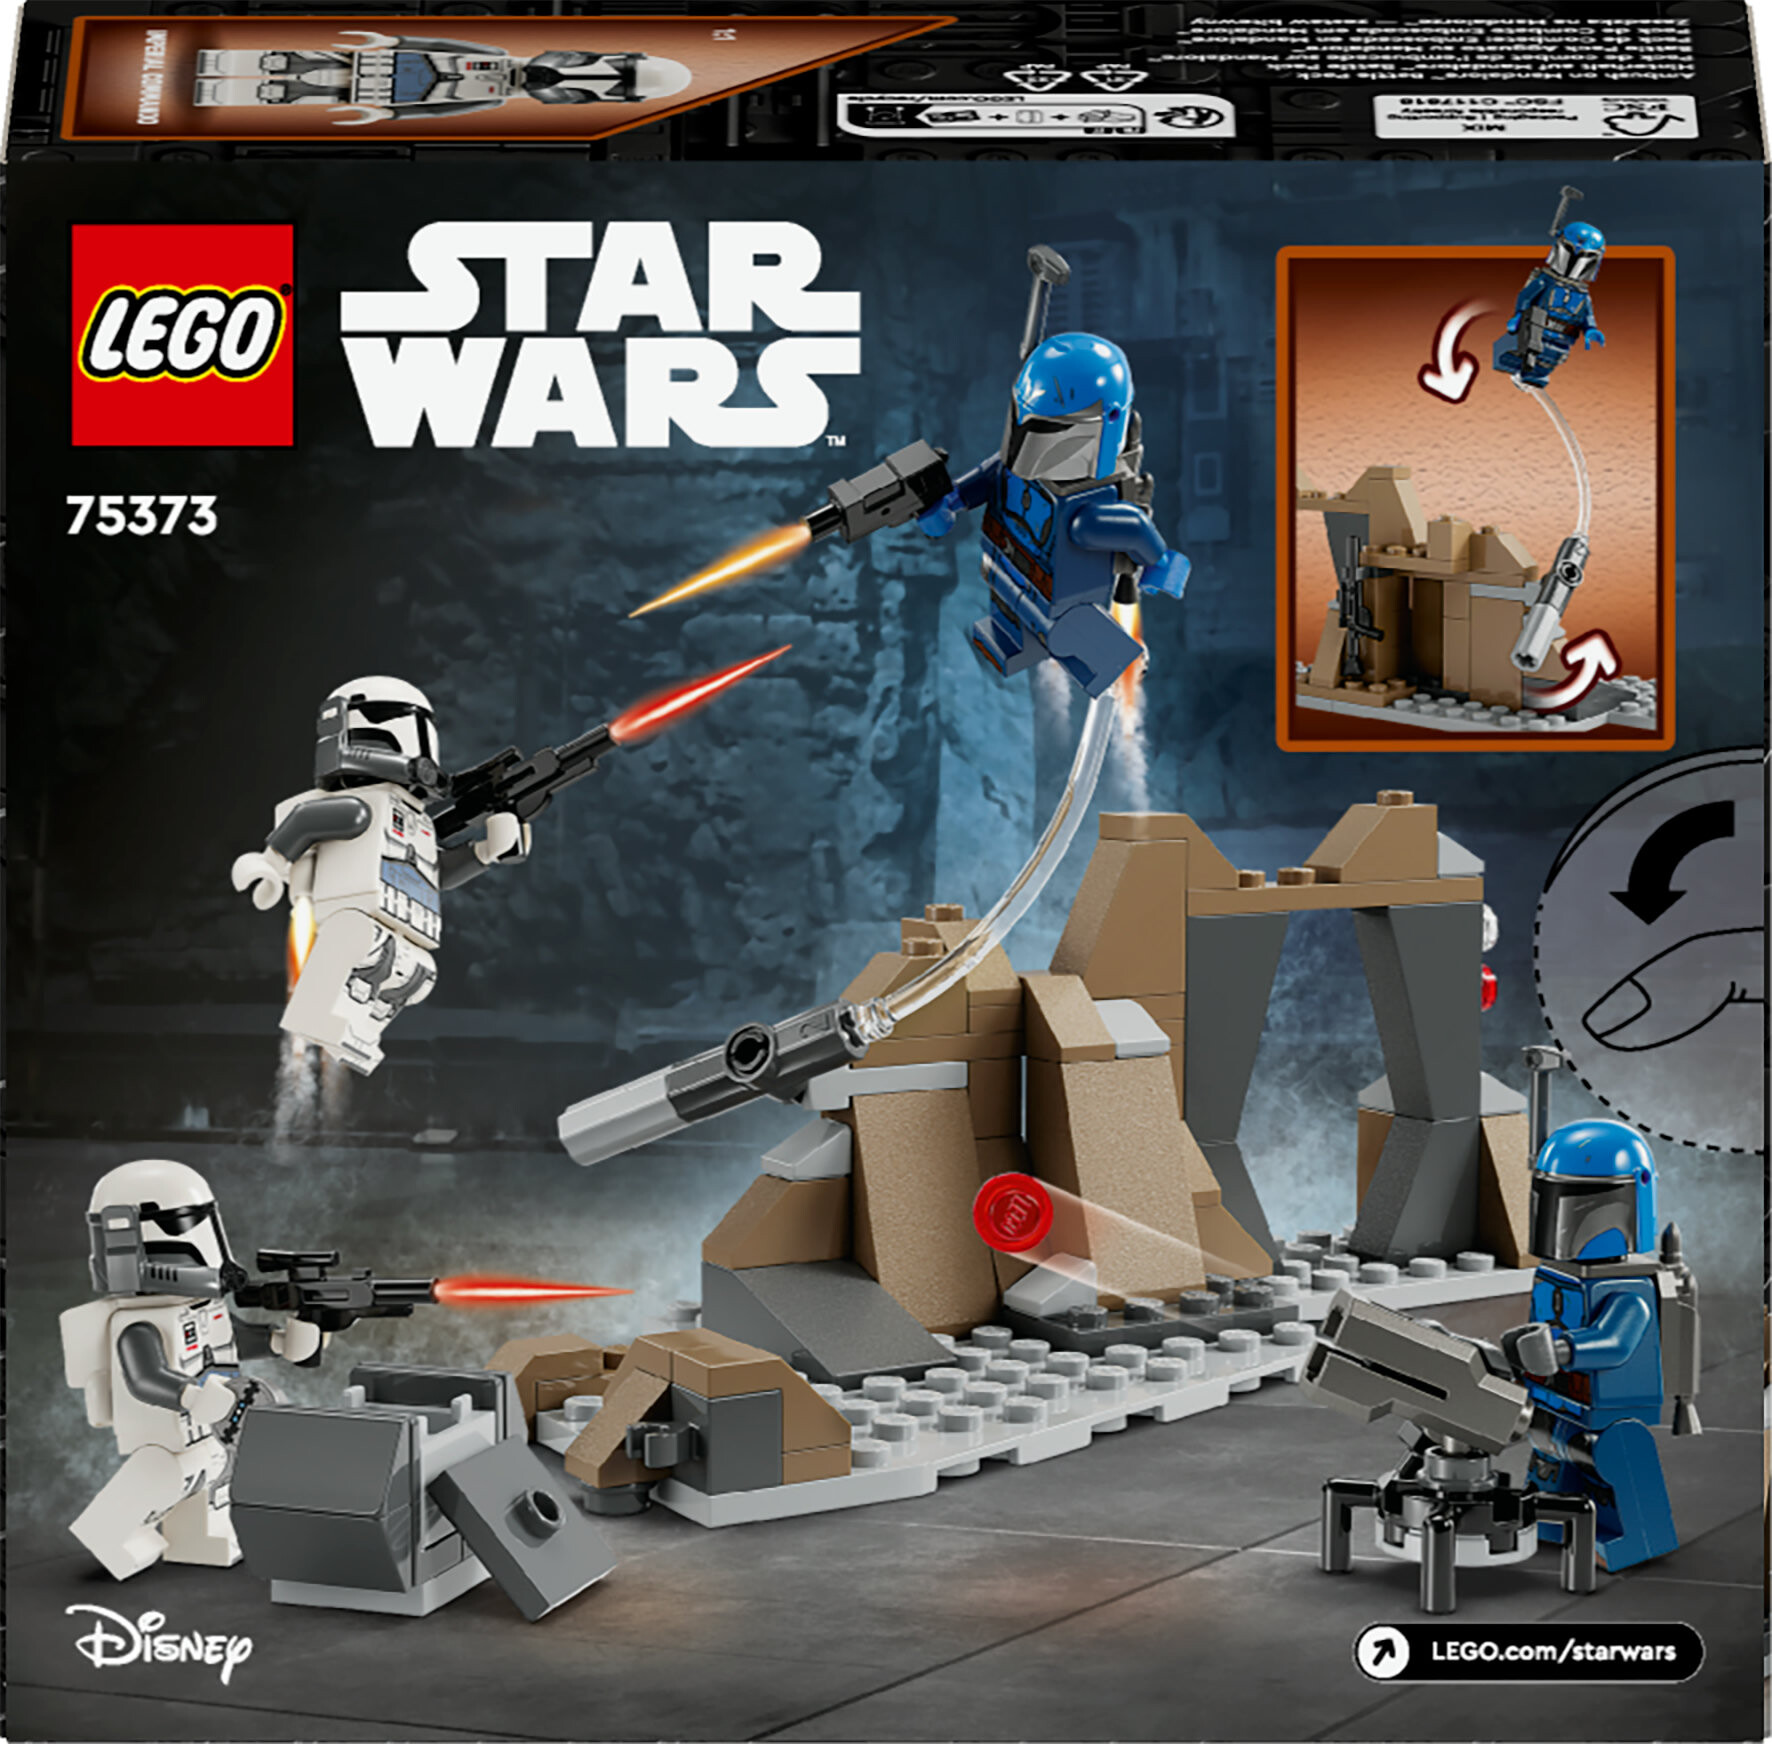 Lego star wars 75373 battle pack agguato su mandalore, gioco d'avventura per bambini 6+ con 4 personaggi con armi e jetpack - LEGO® Star Wars™